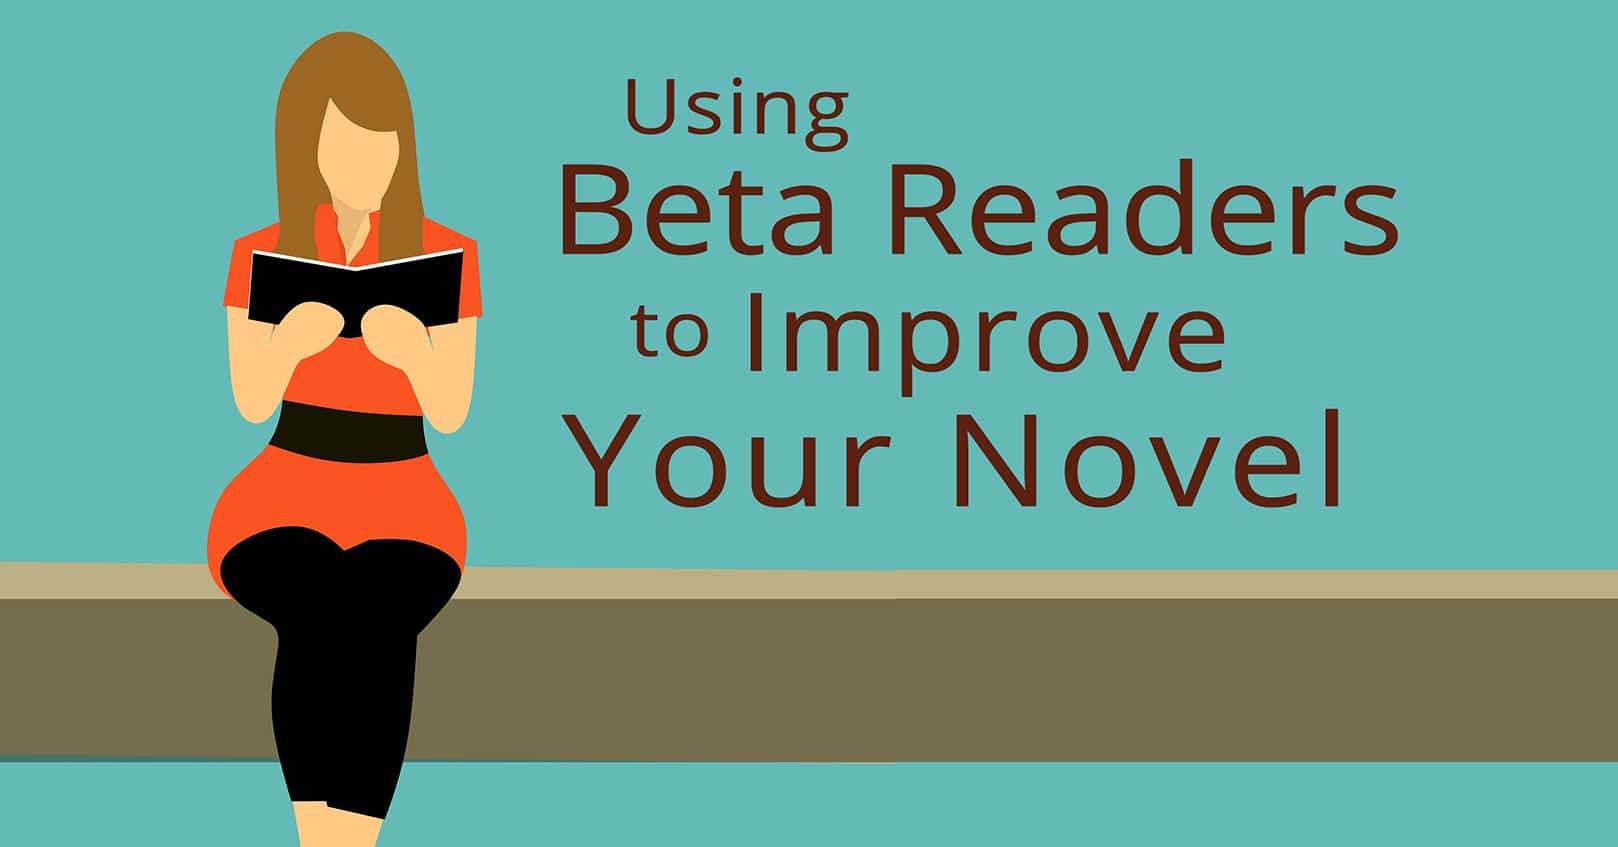 Using beta readers